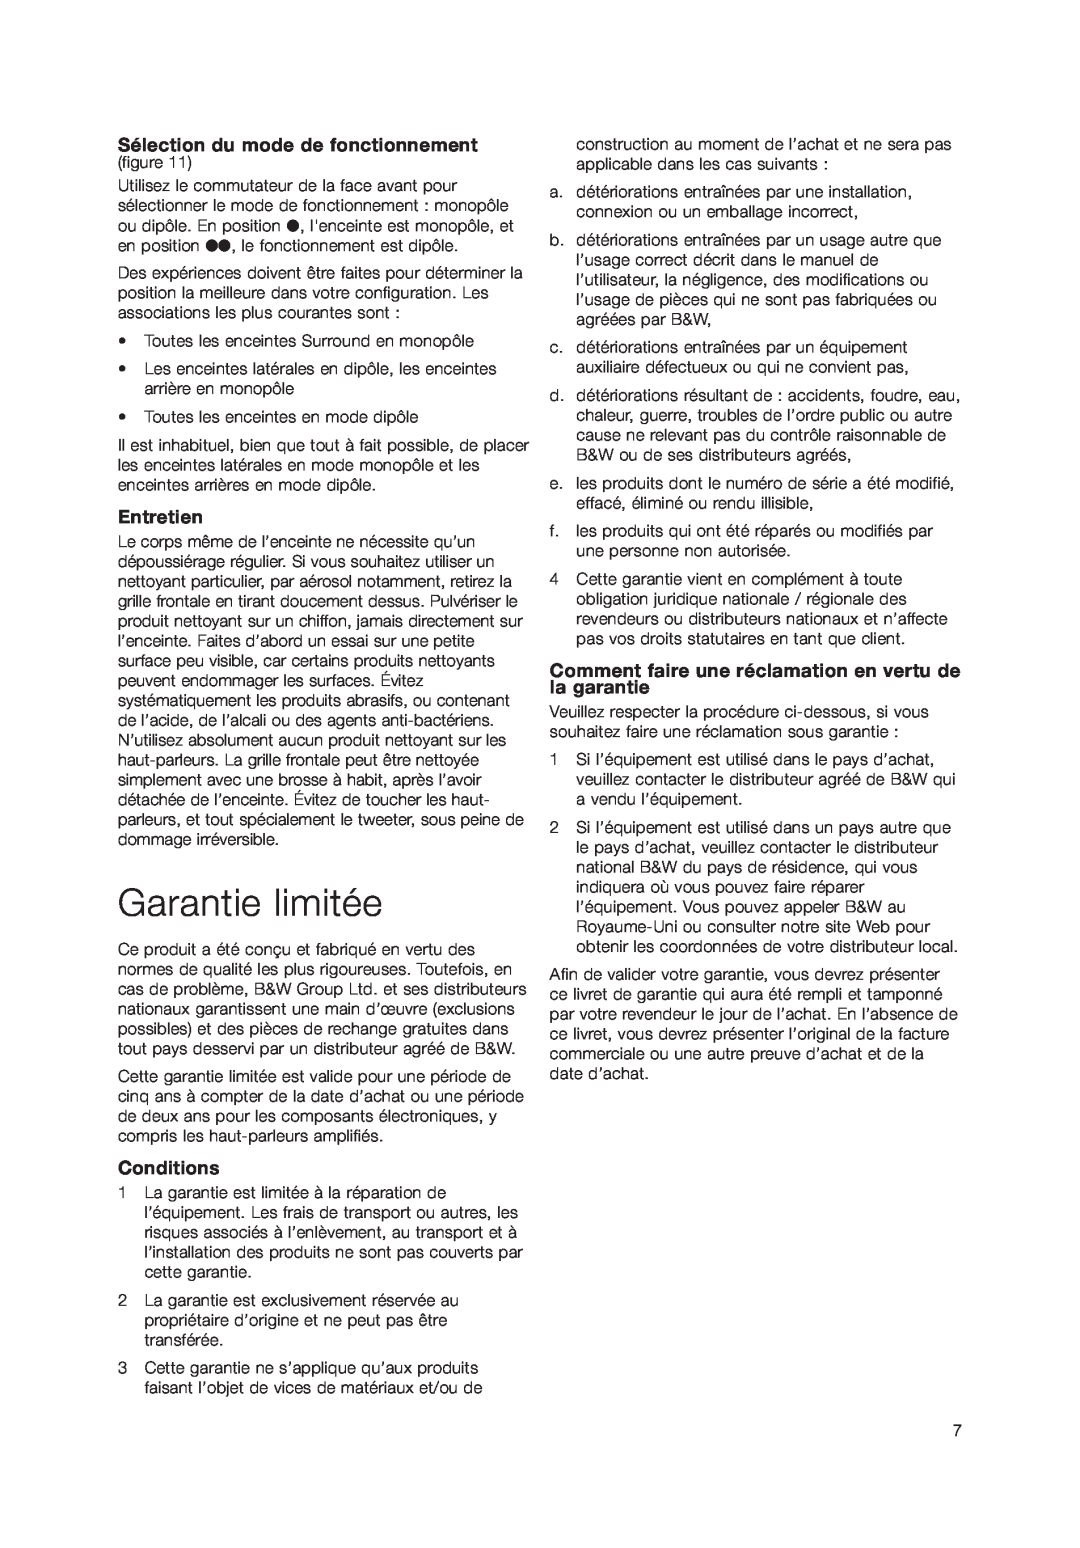 Bowers & Wilkins DS3 owner manual Garantie limitée, Sélection du mode de fonctionnement, Entretien, Conditions 